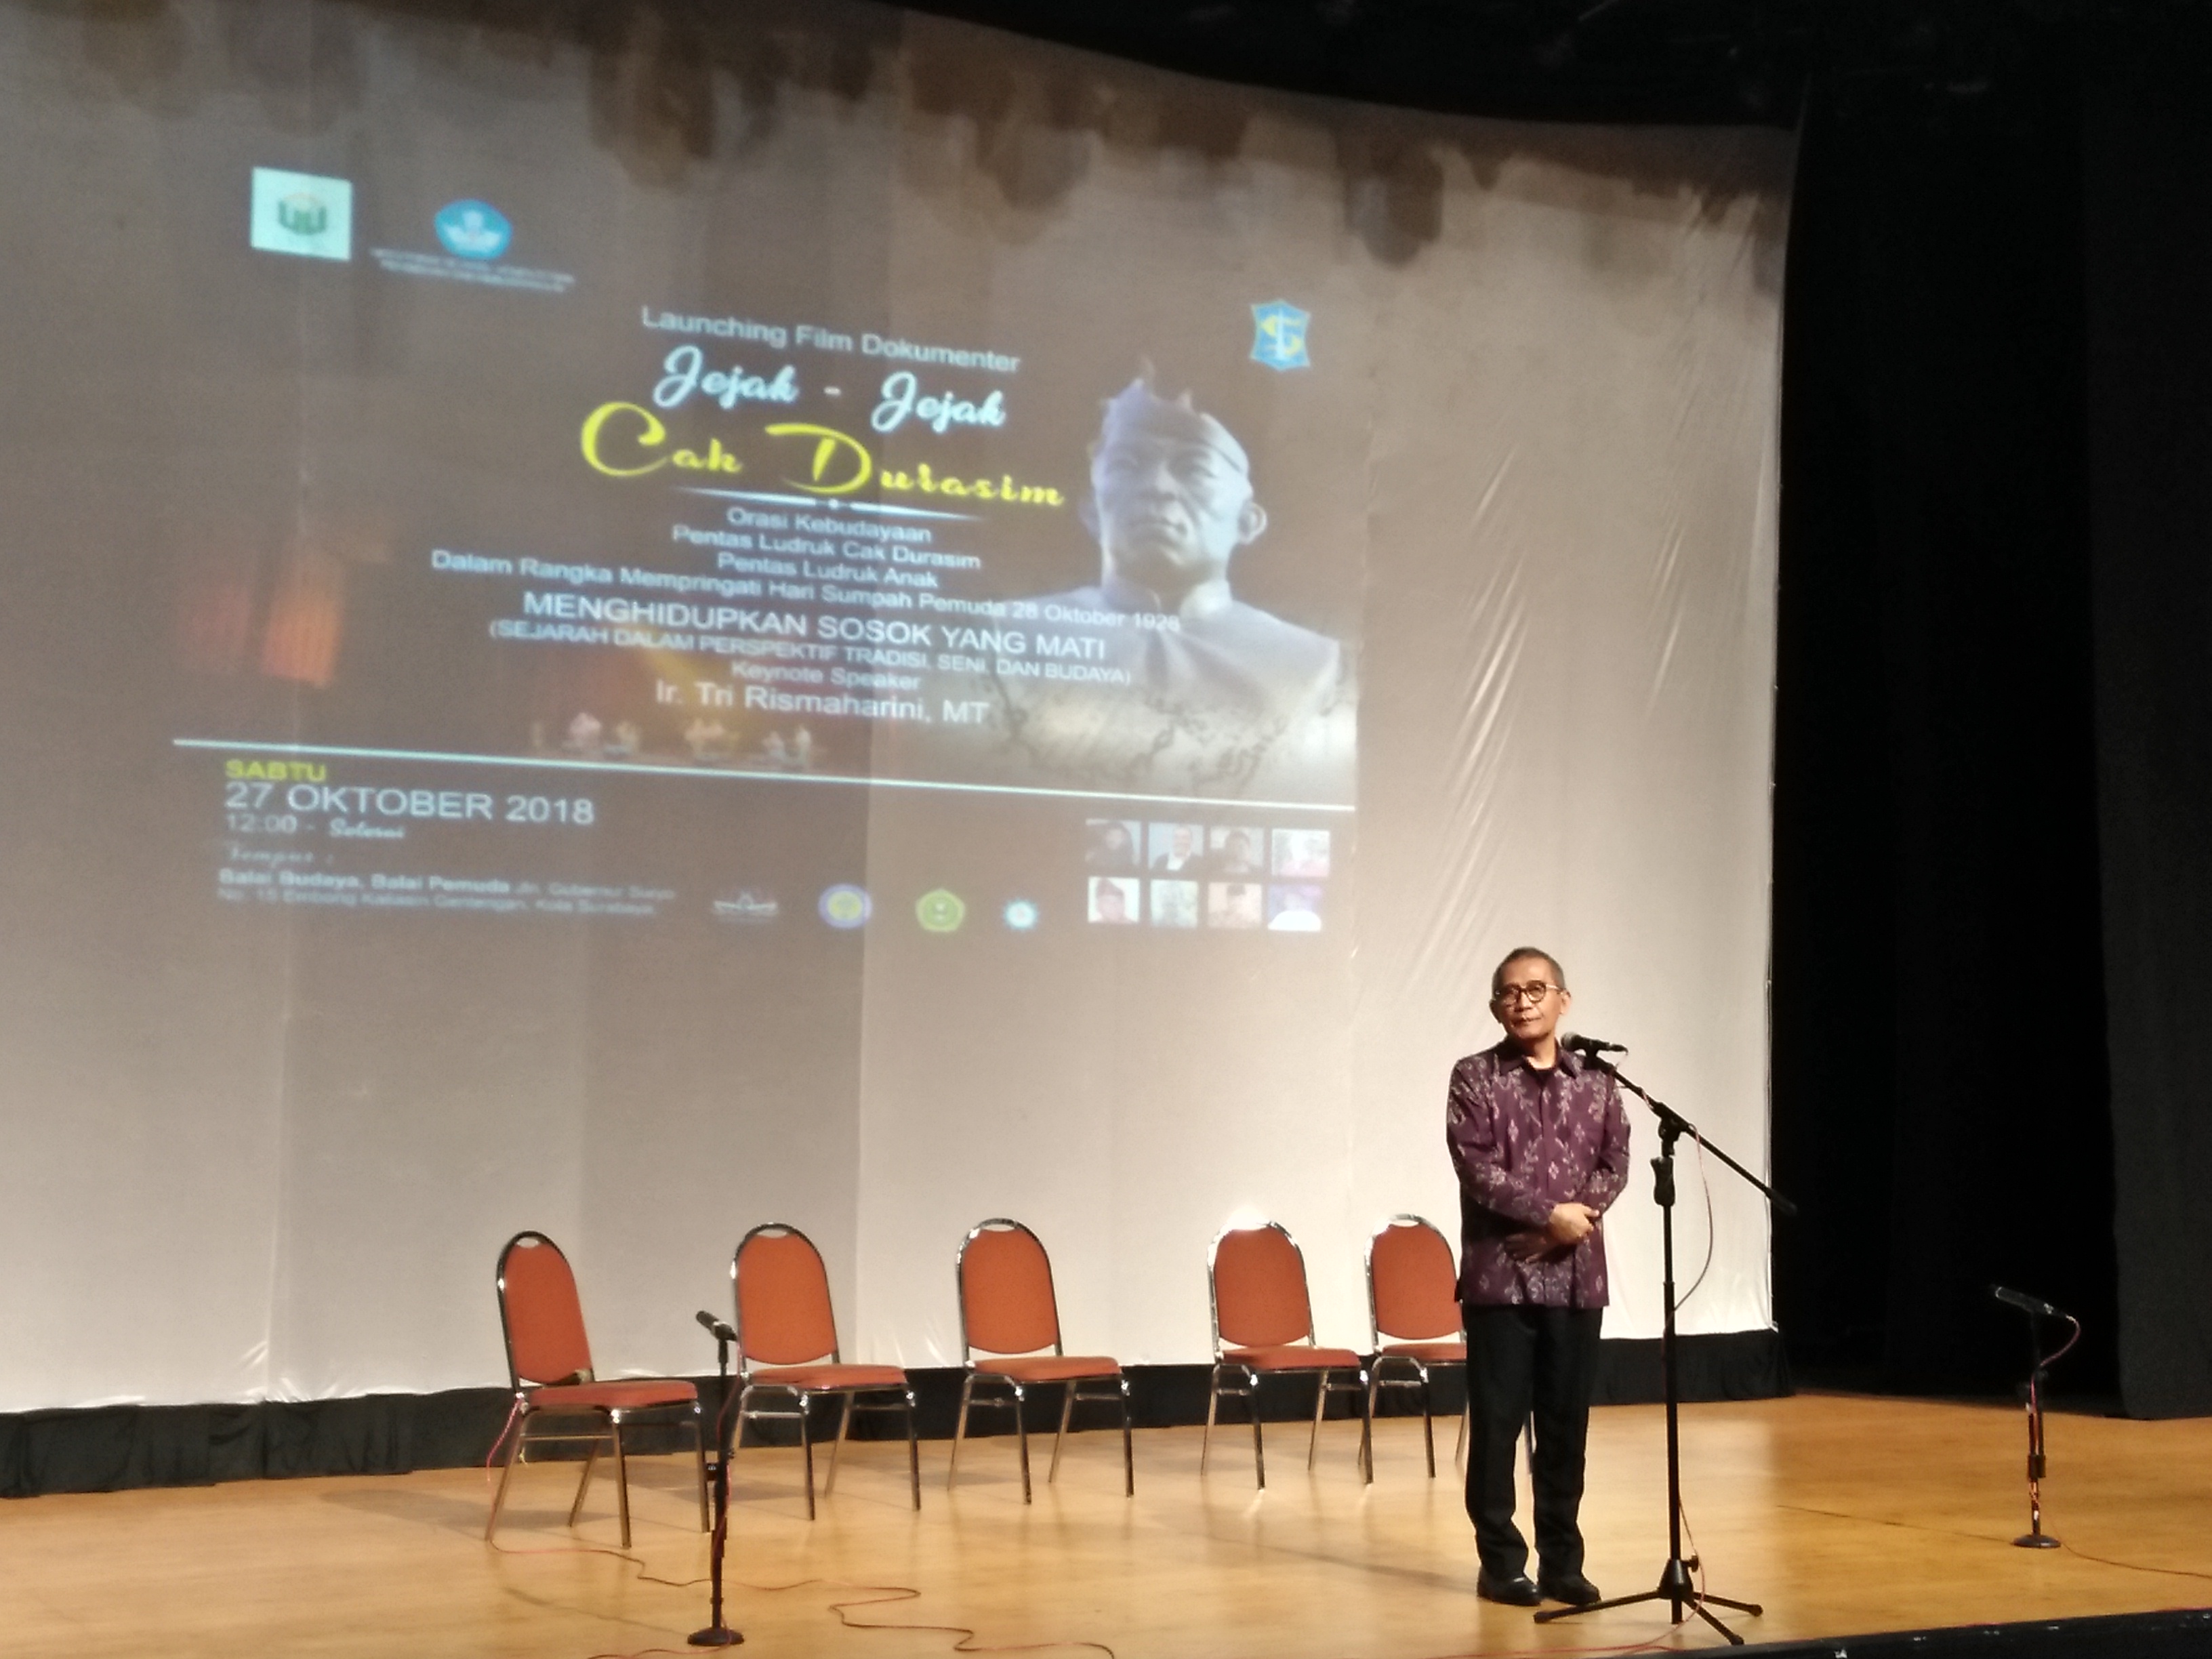 Rektor Unusa, Prof. Achmad Jazidie ketika memberikan sambutan saat launching film dokumenter 'Jejak-jejak Cak Durasim', Sabtu, 27 Oktober 2018. (Foto: Amanah/ngopibareng.id)